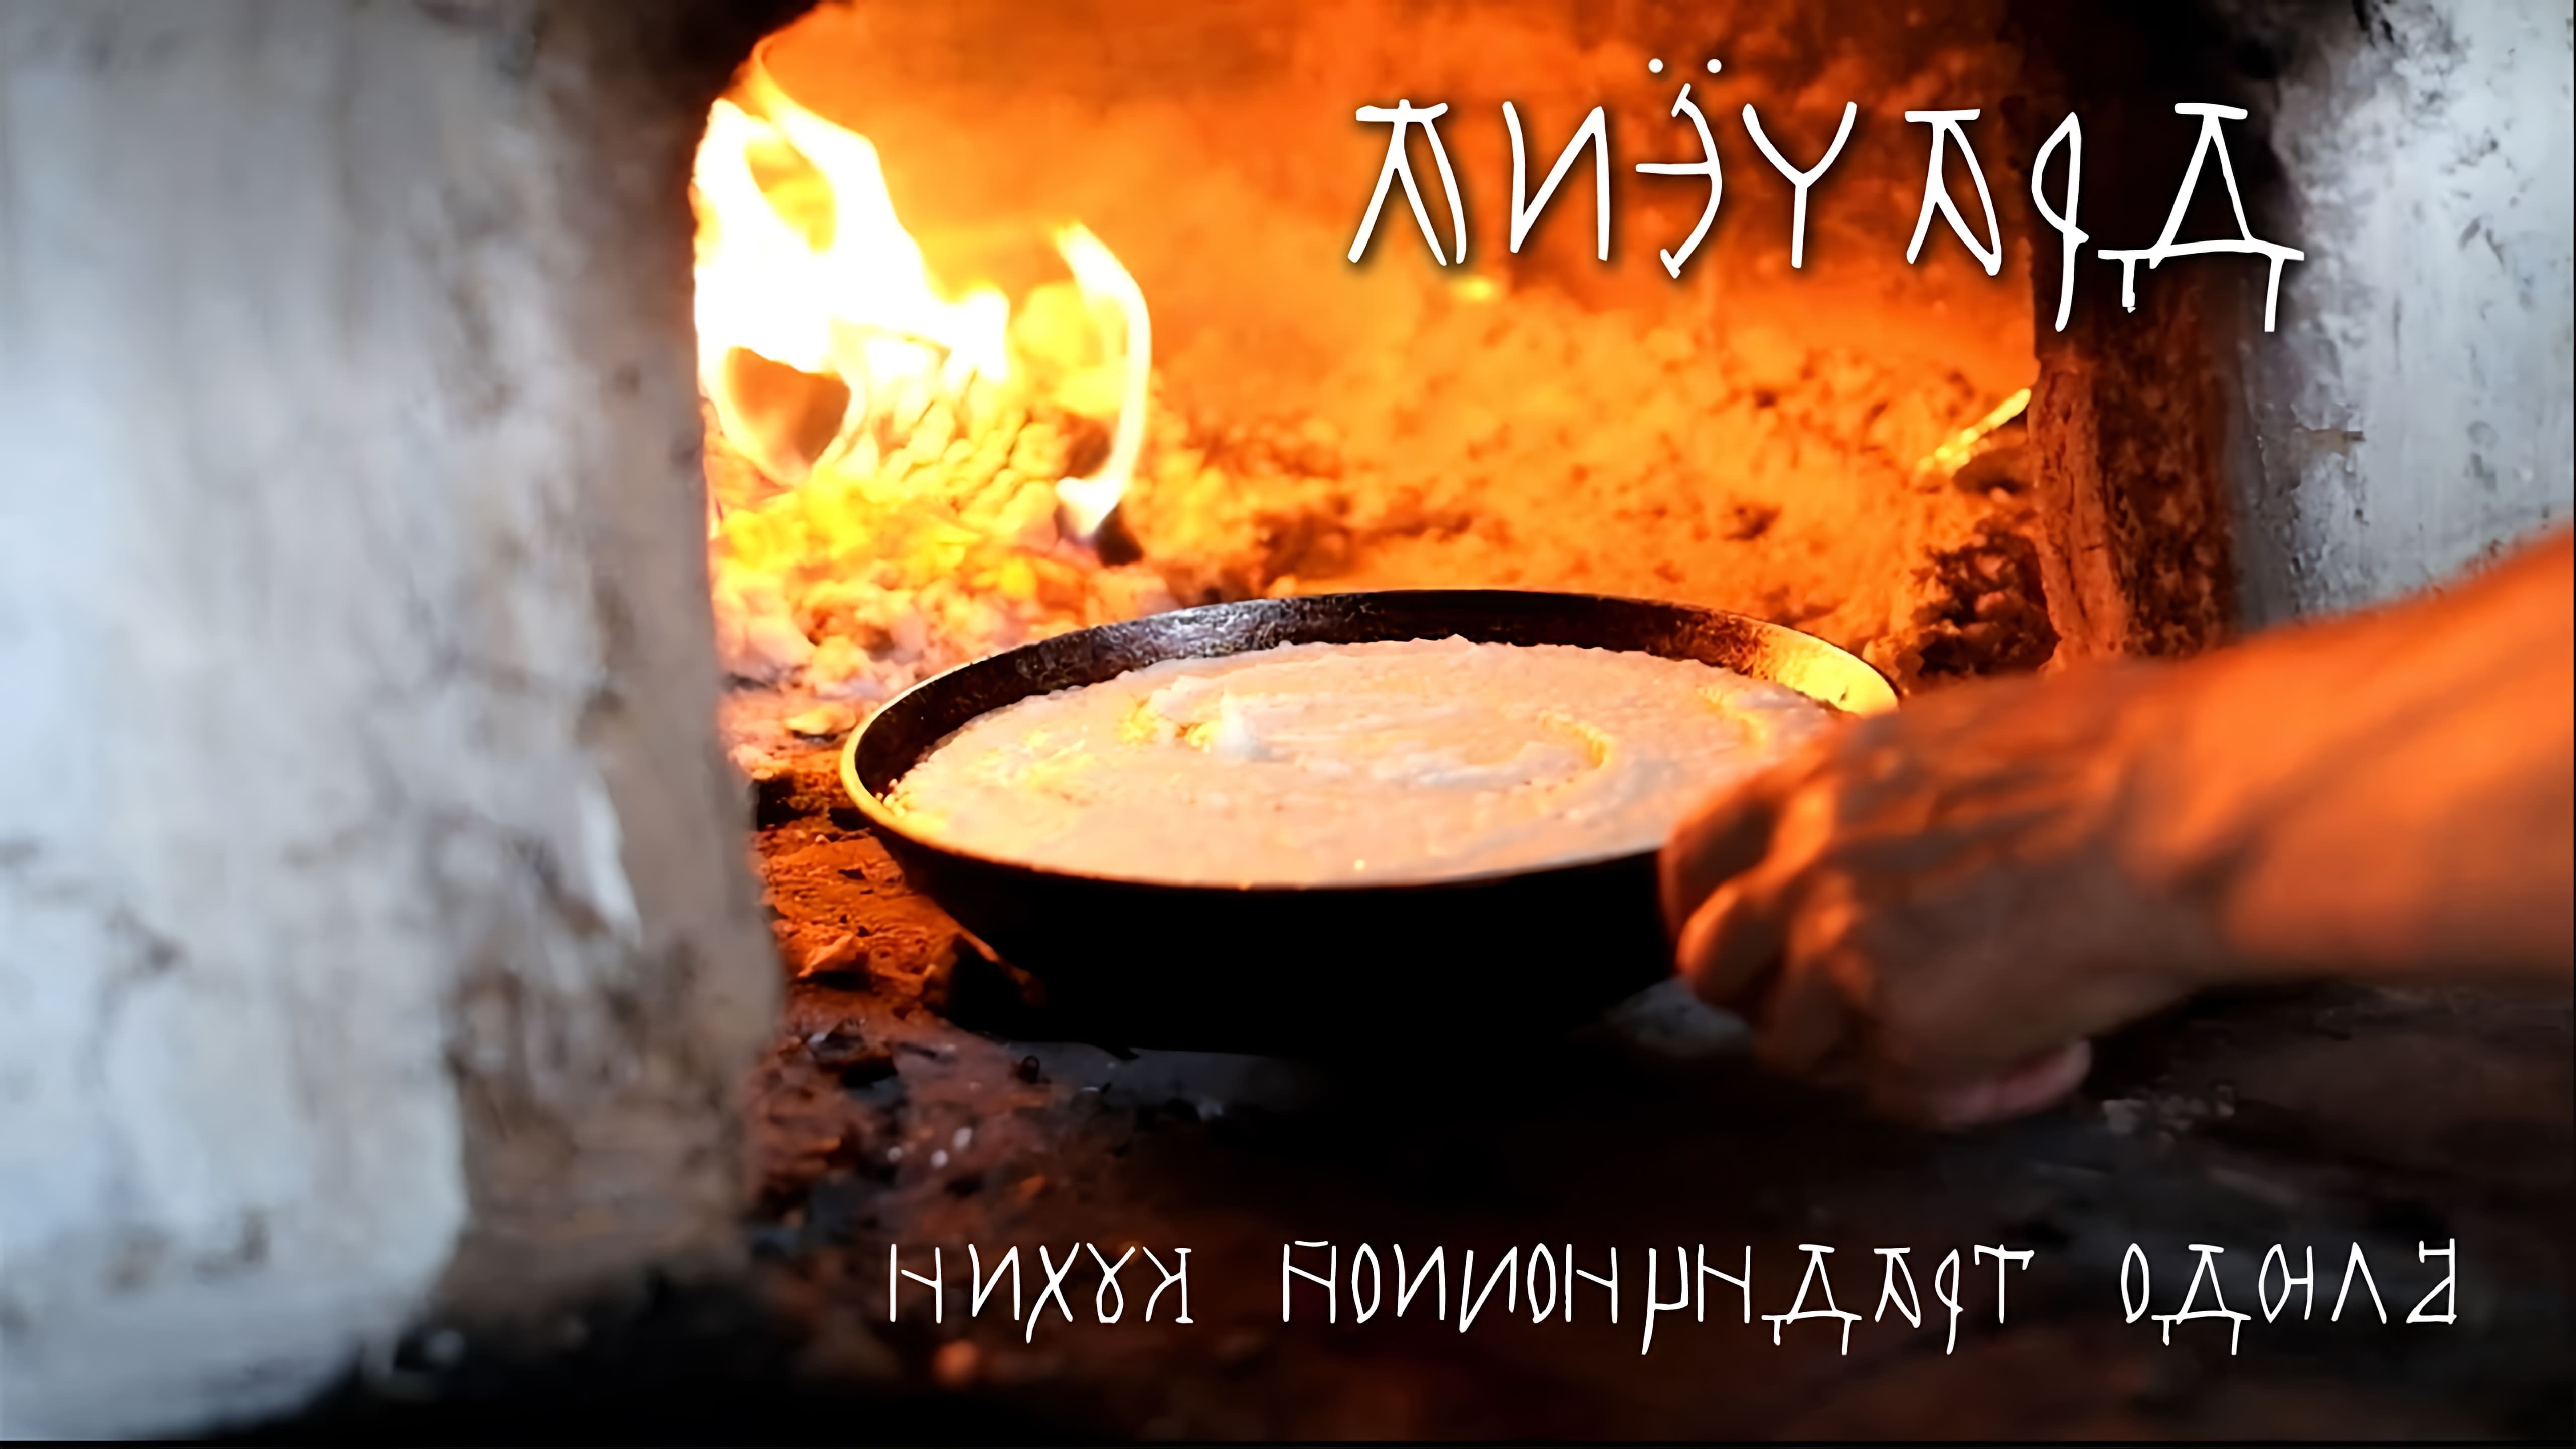 В данном видео-ролике рассказывается о блюде традиционной русской кухни, которое готовится в русской печи